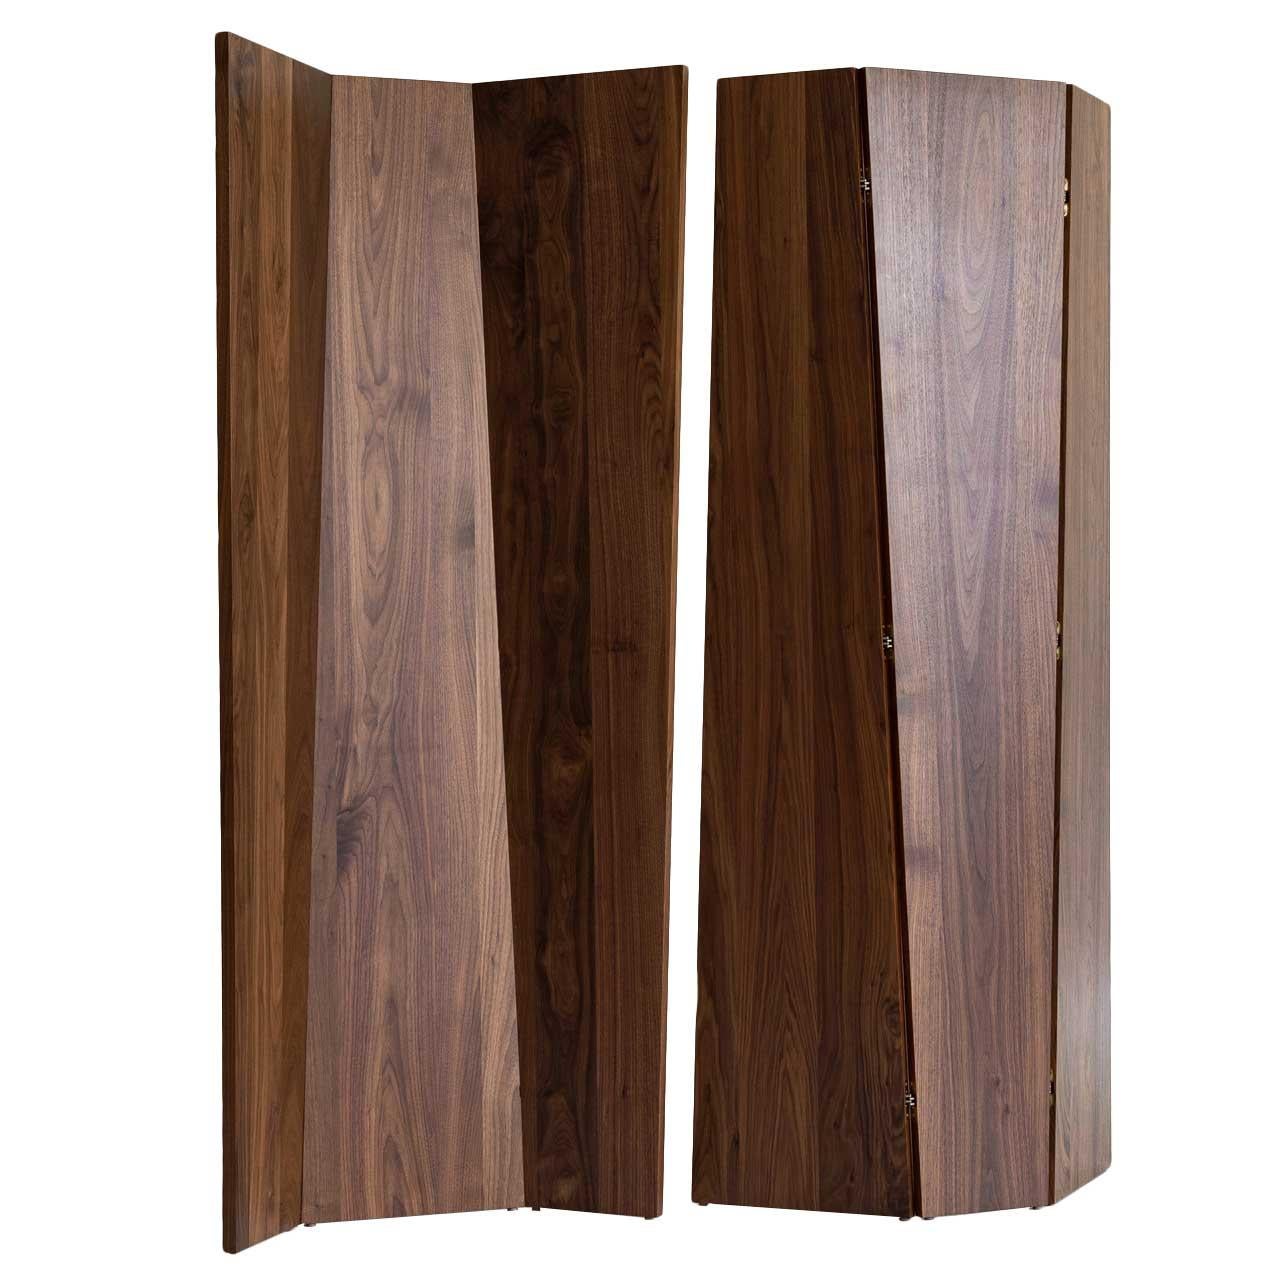 Handmade Tri-Fold Solid Walnut Folding Screen or Room Divider